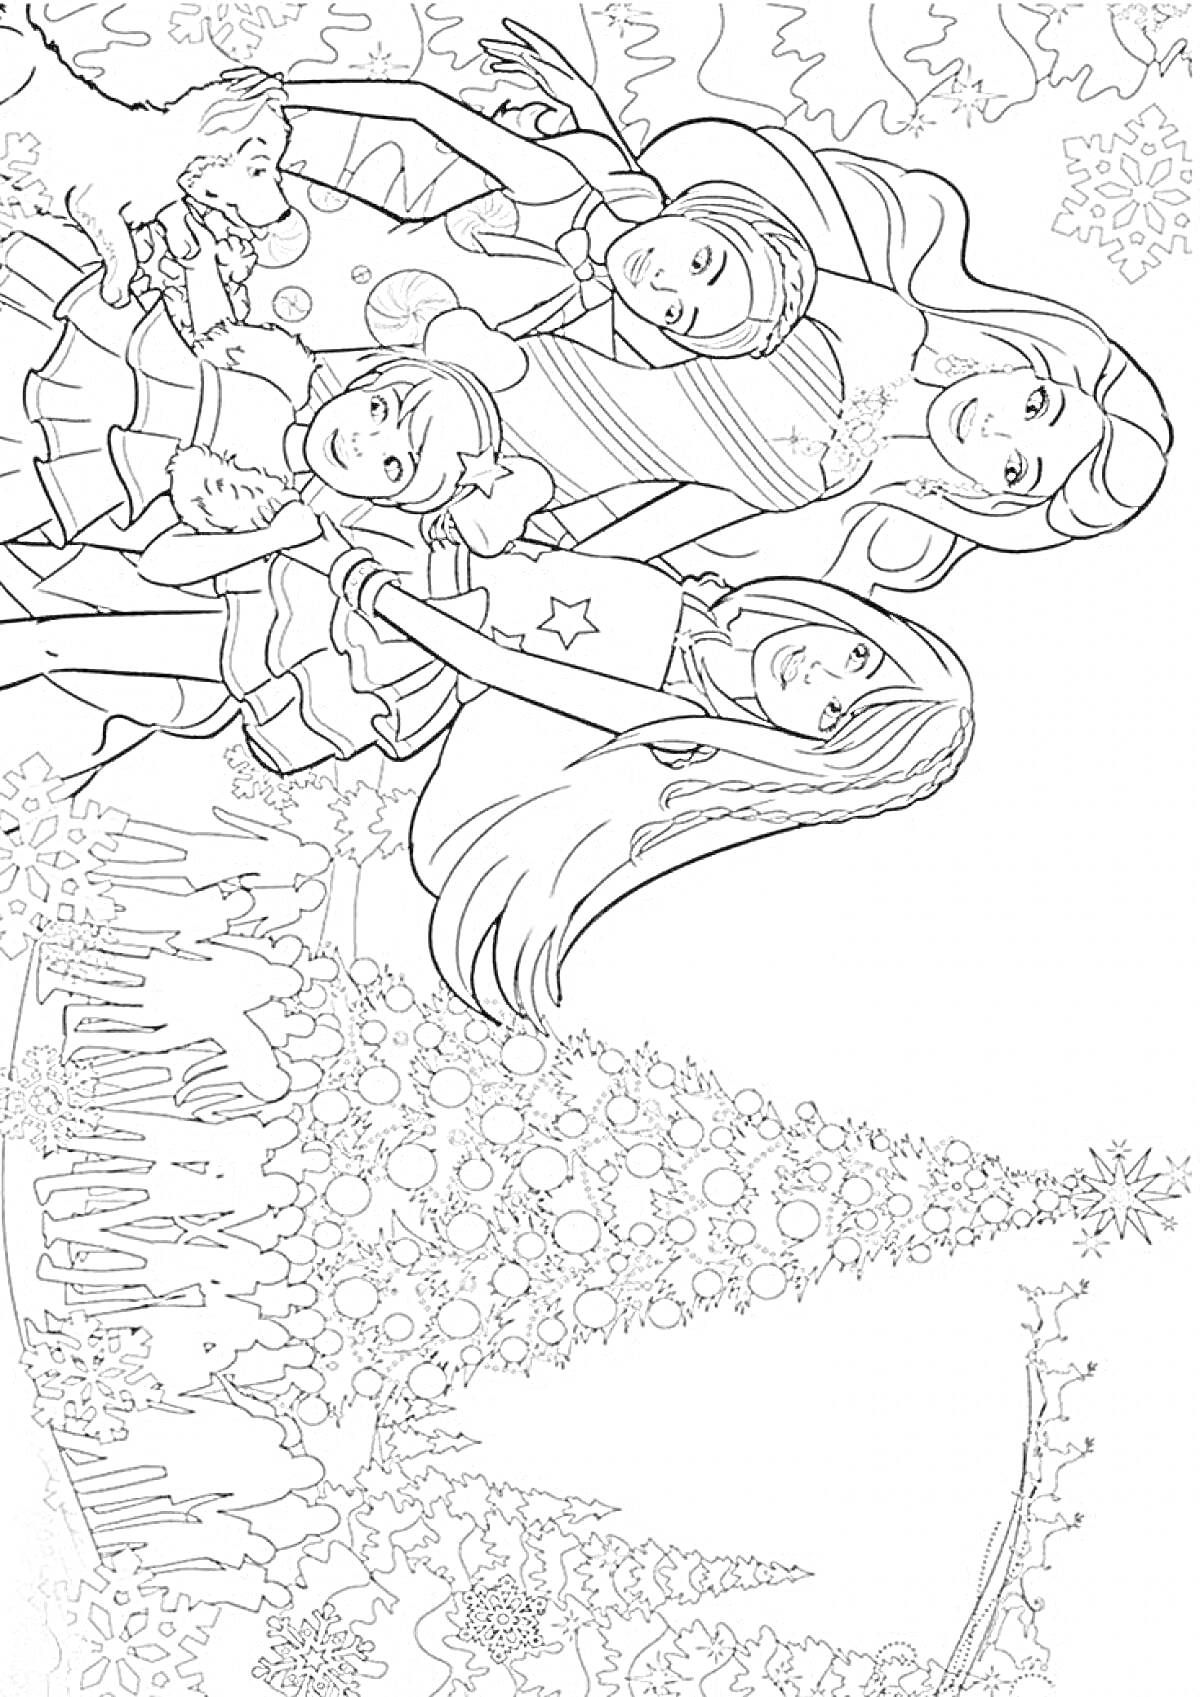 Раскраска Барби и друзья на фоне рождественской елки, украшенной шарами и гирляндами, девушки одеты в зимние наряды, стоят под снежинками